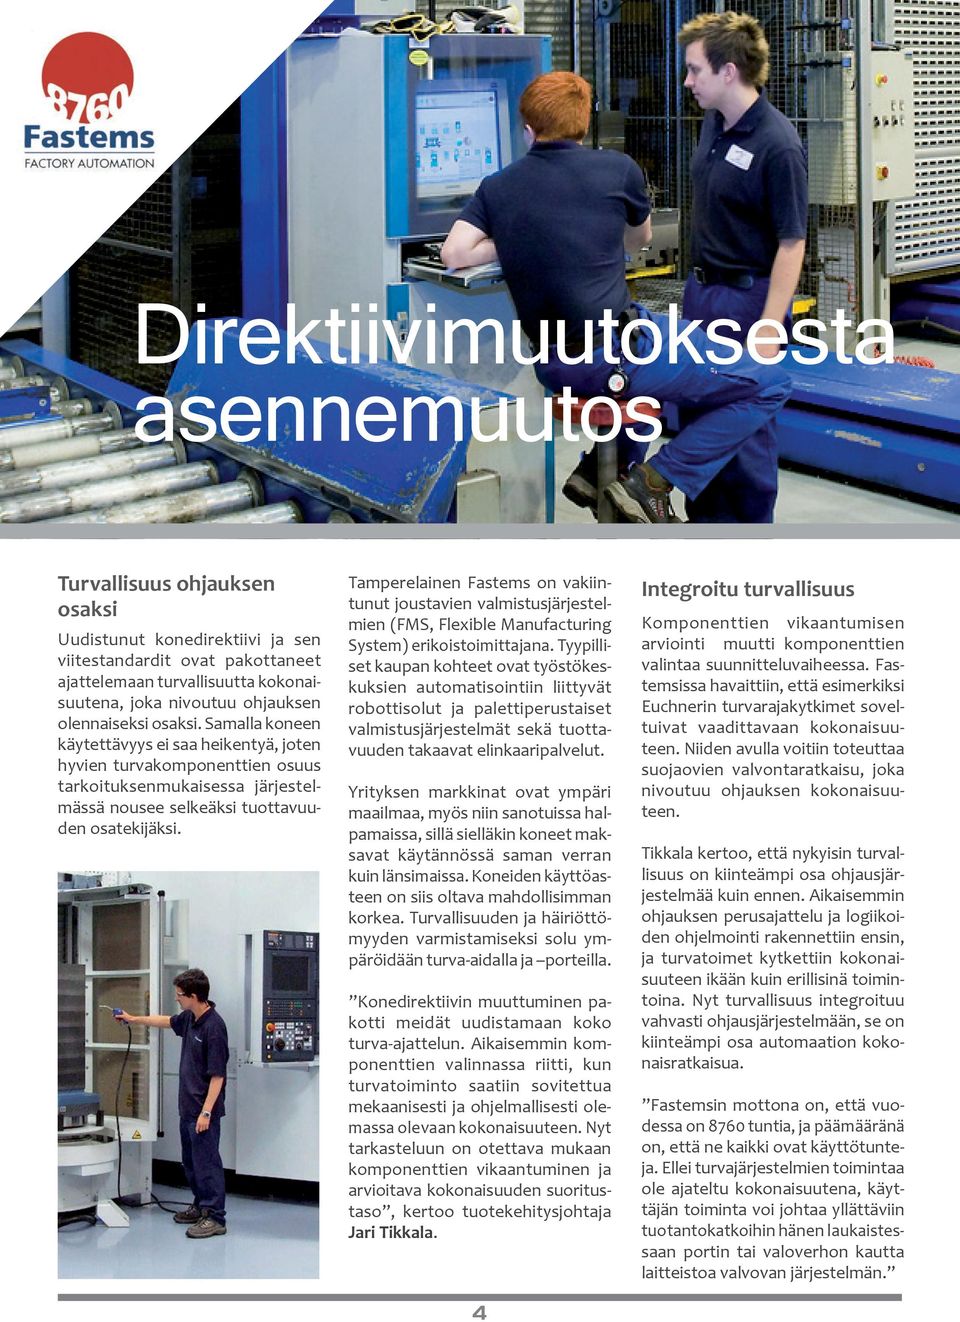 Tamperelainen Fastems on vakiintunut joustavien valmistusjärjestelmien (FMS, Flexible Manufacturing System) erikoistoimittajana.